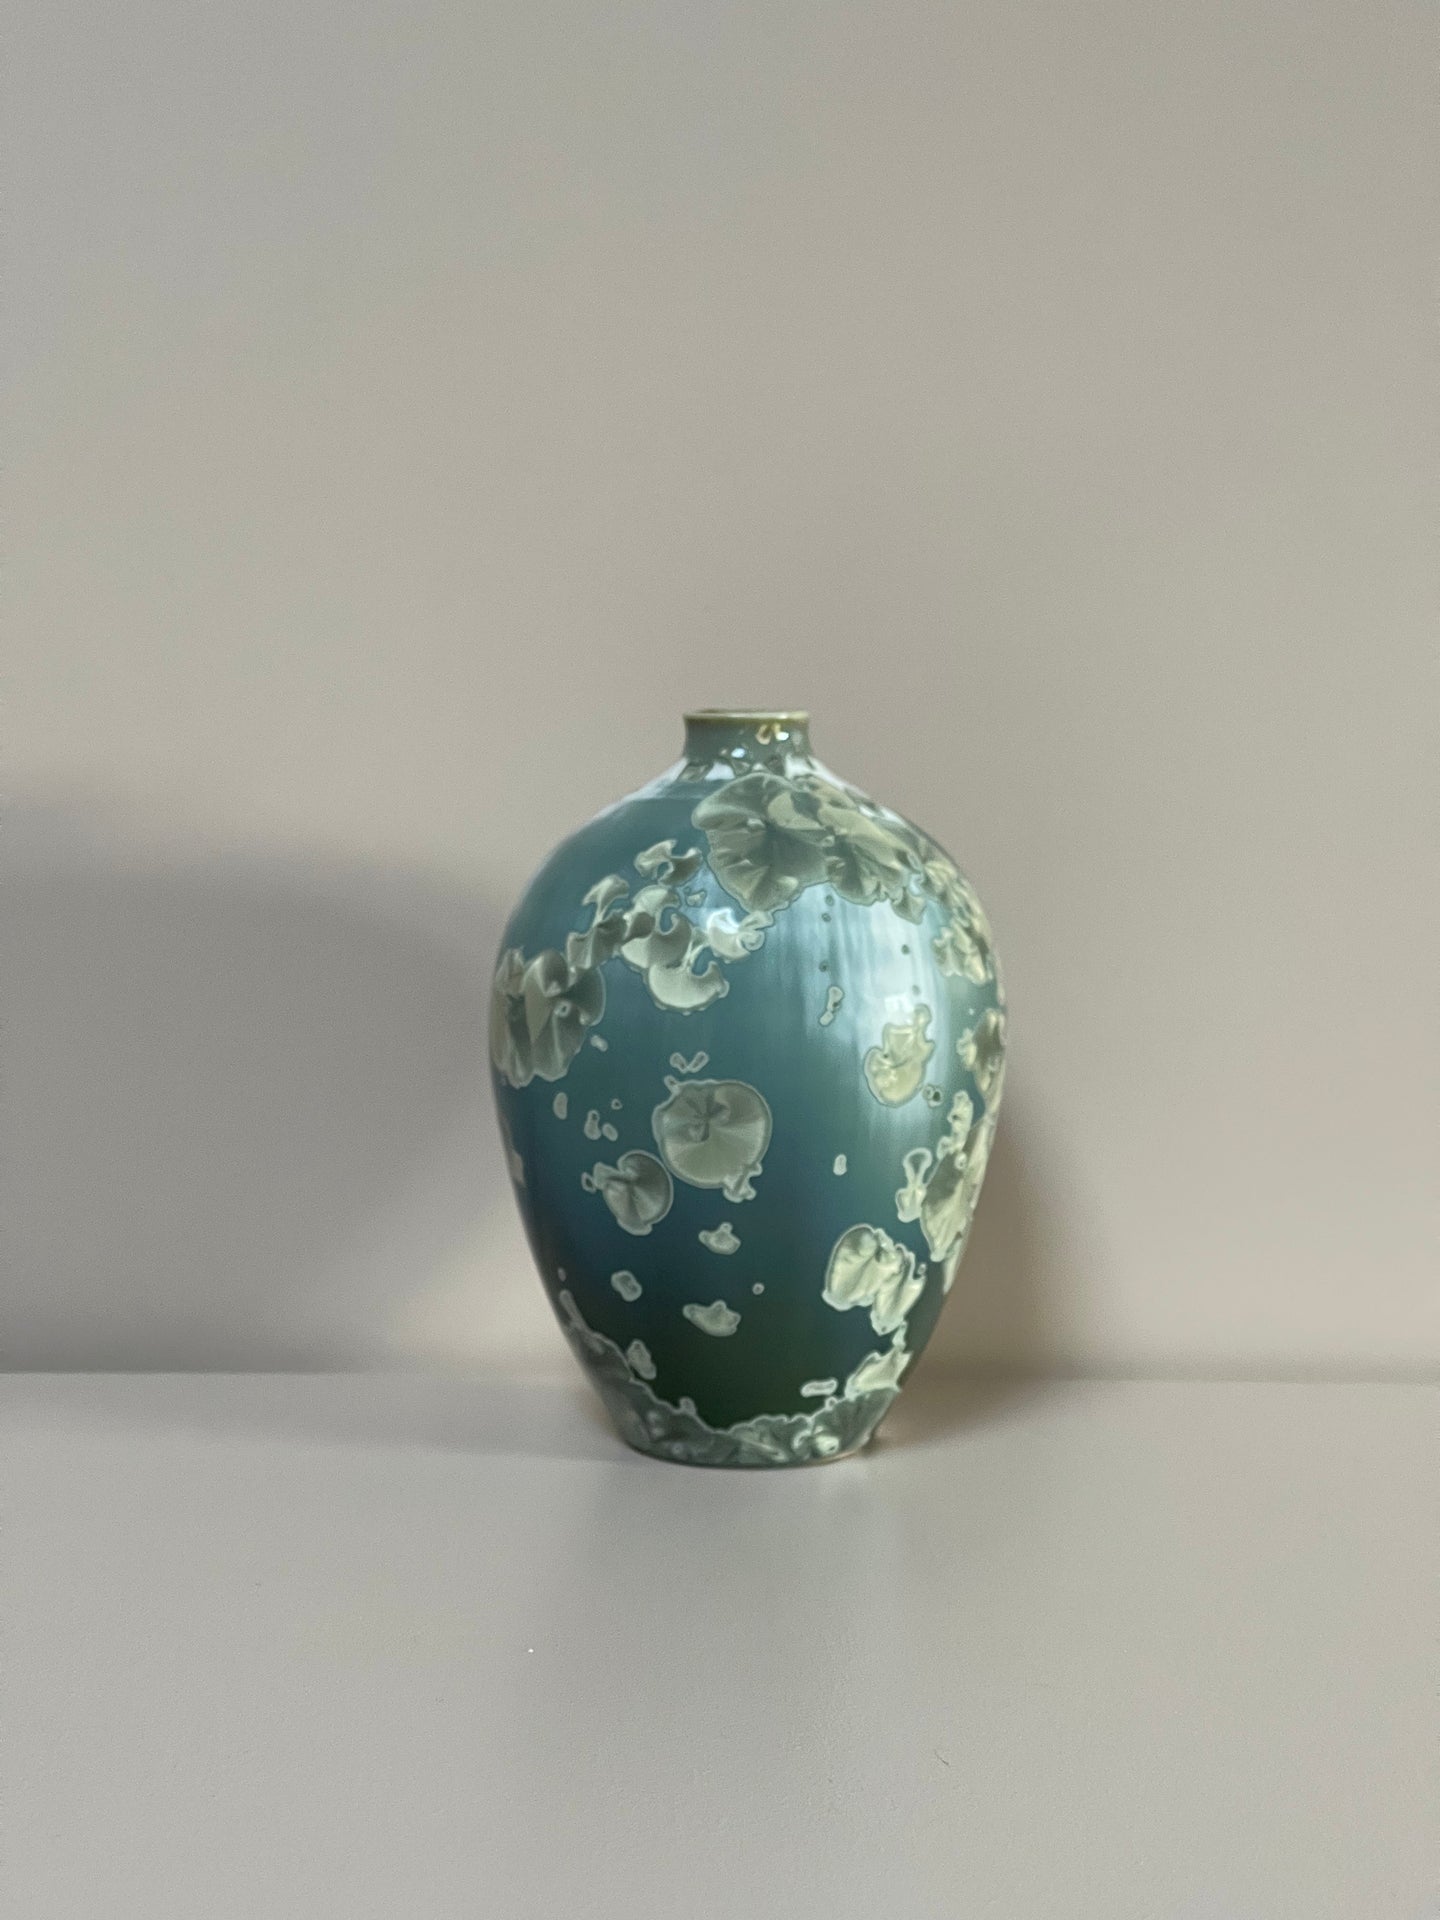 Small Teal Crystalline Vase